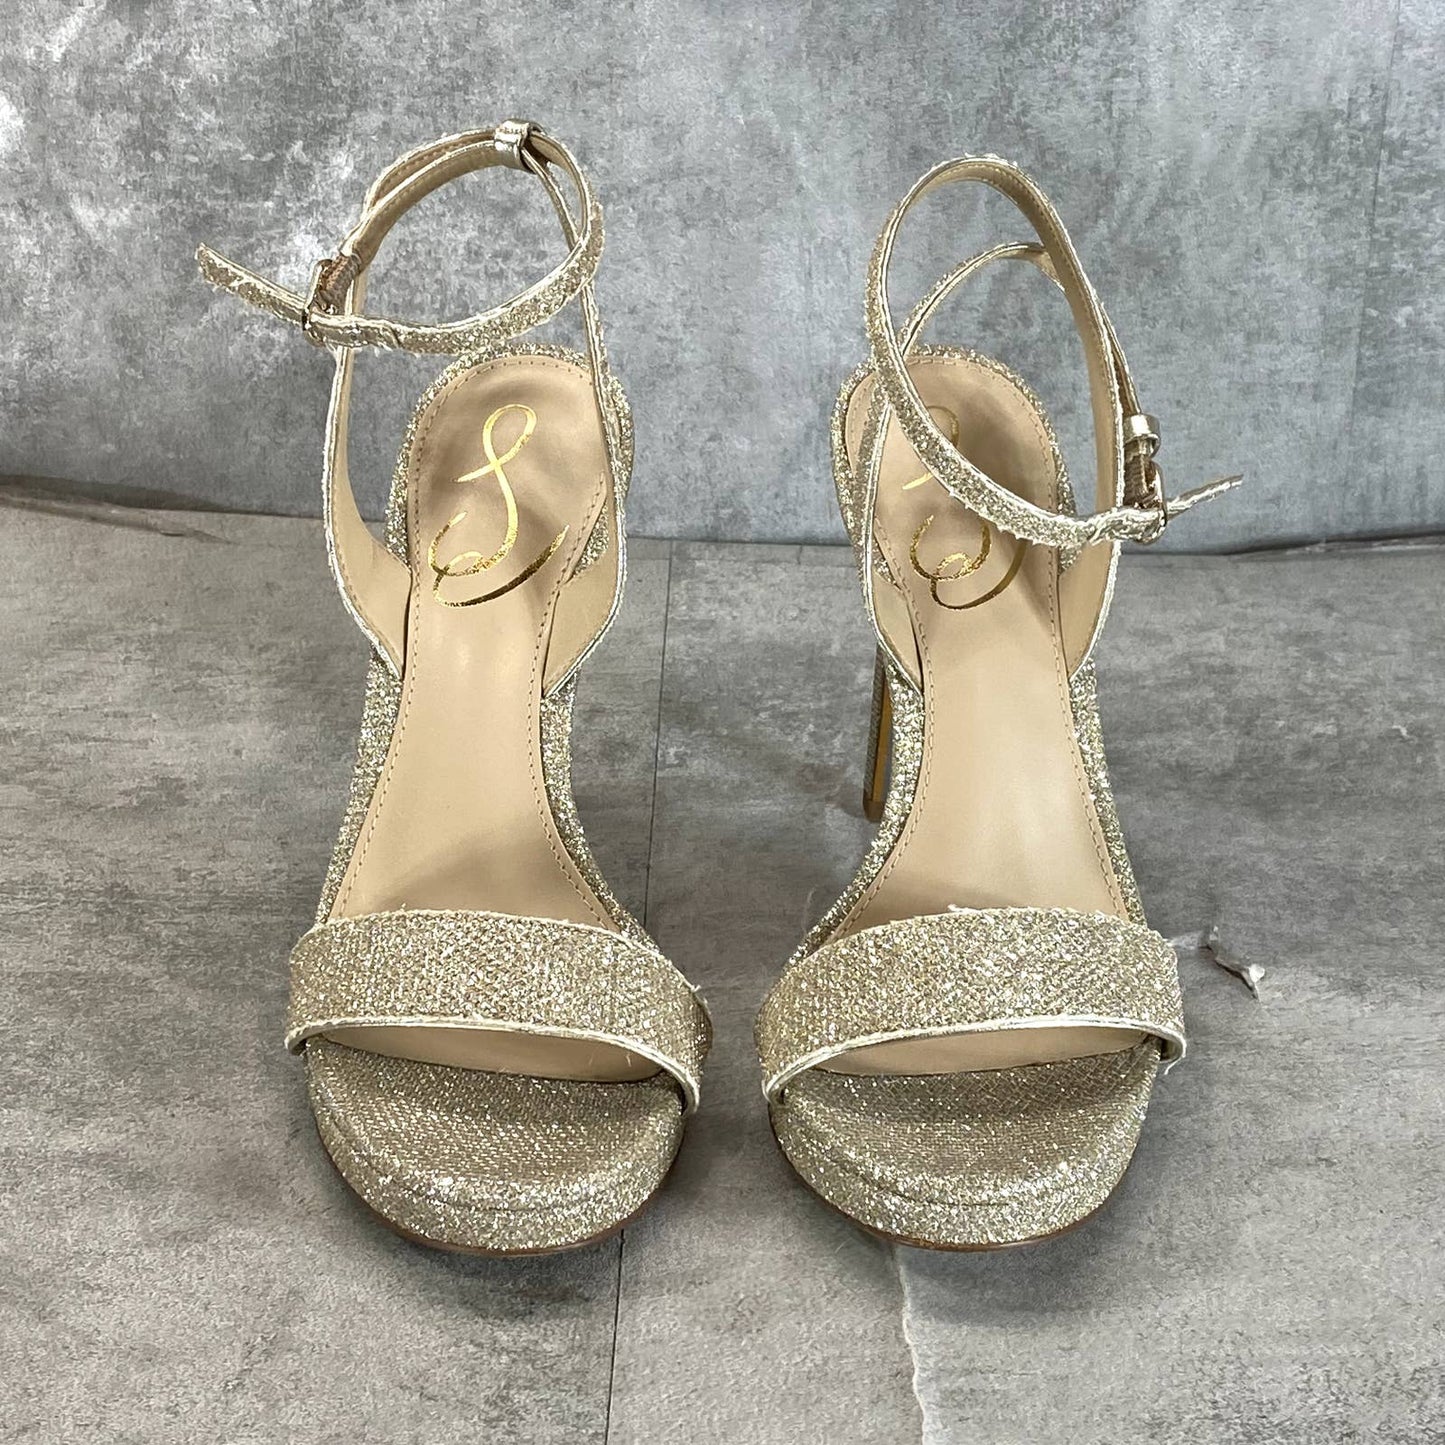 SAM EDELMAN Women's Gold Glitter Jade Ankle-Strap Stiletto Evening Sandals SZ 6